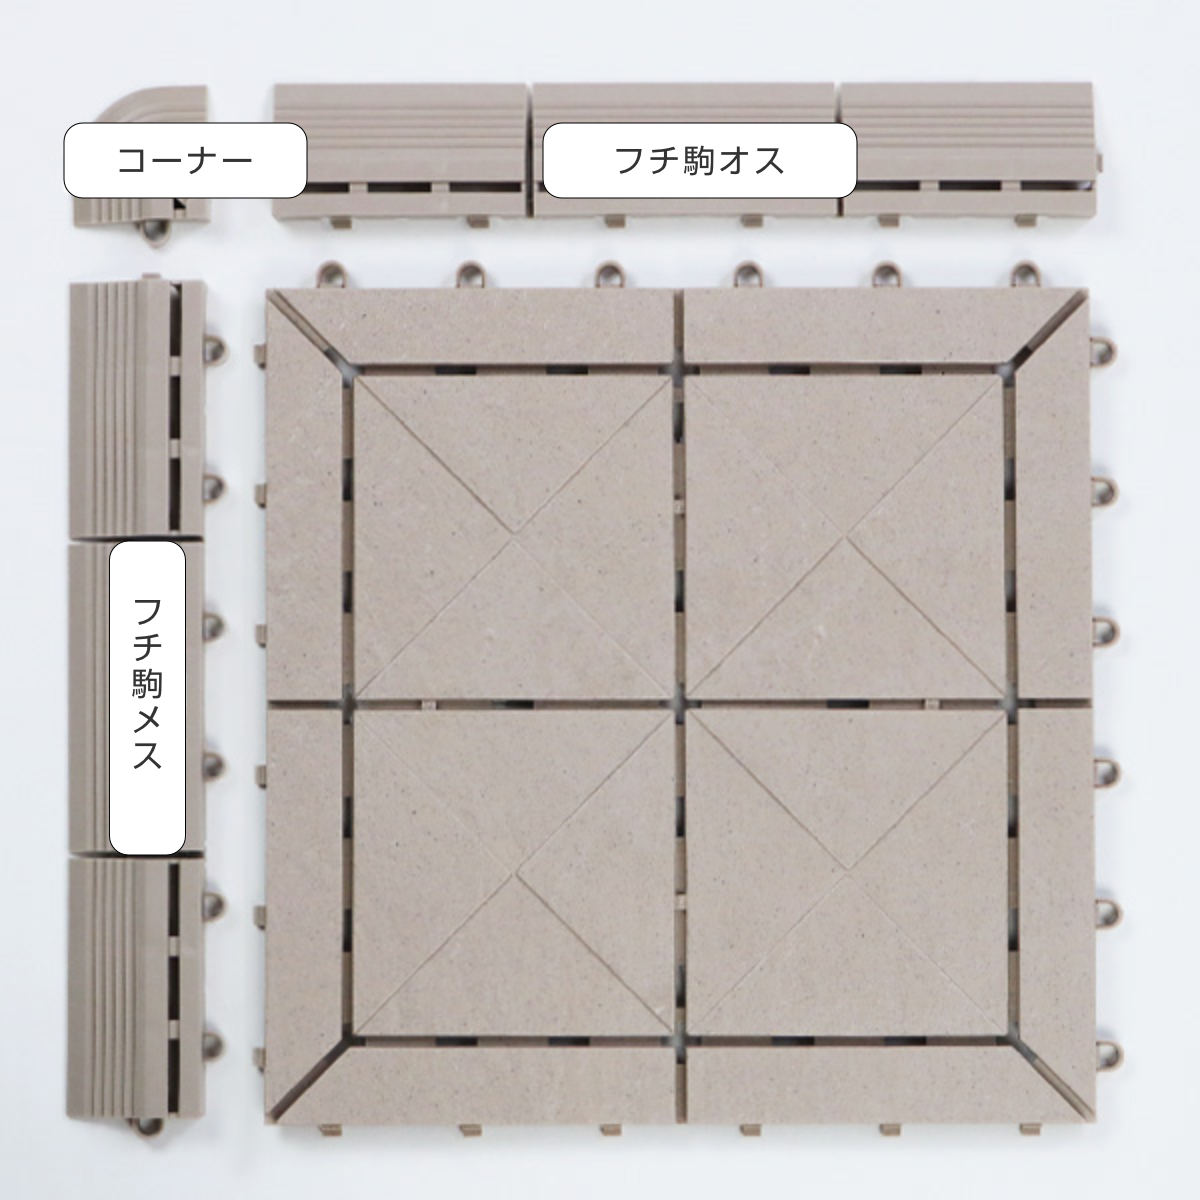  камень глаз единица для joint детали угол 2 штук Stone style ( платформа из деревянных планок полимер пластиковый Yamazaki промышленность )